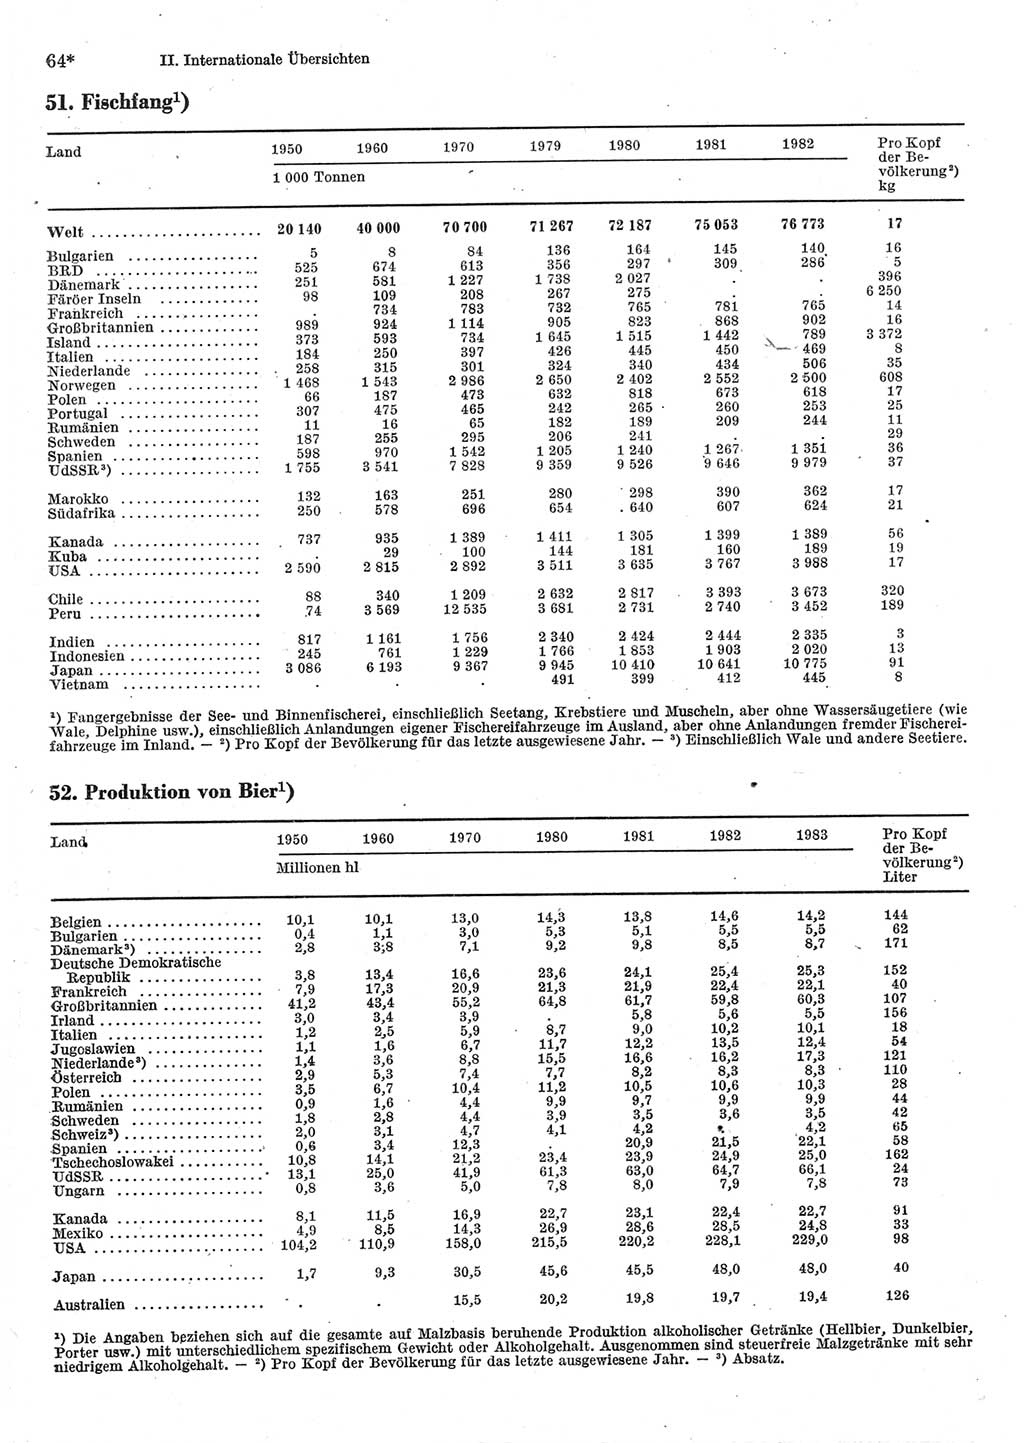 Statistisches Jahrbuch der Deutschen Demokratischen Republik (DDR) 1985, Seite 64 (Stat. Jb. DDR 1985, S. 64)